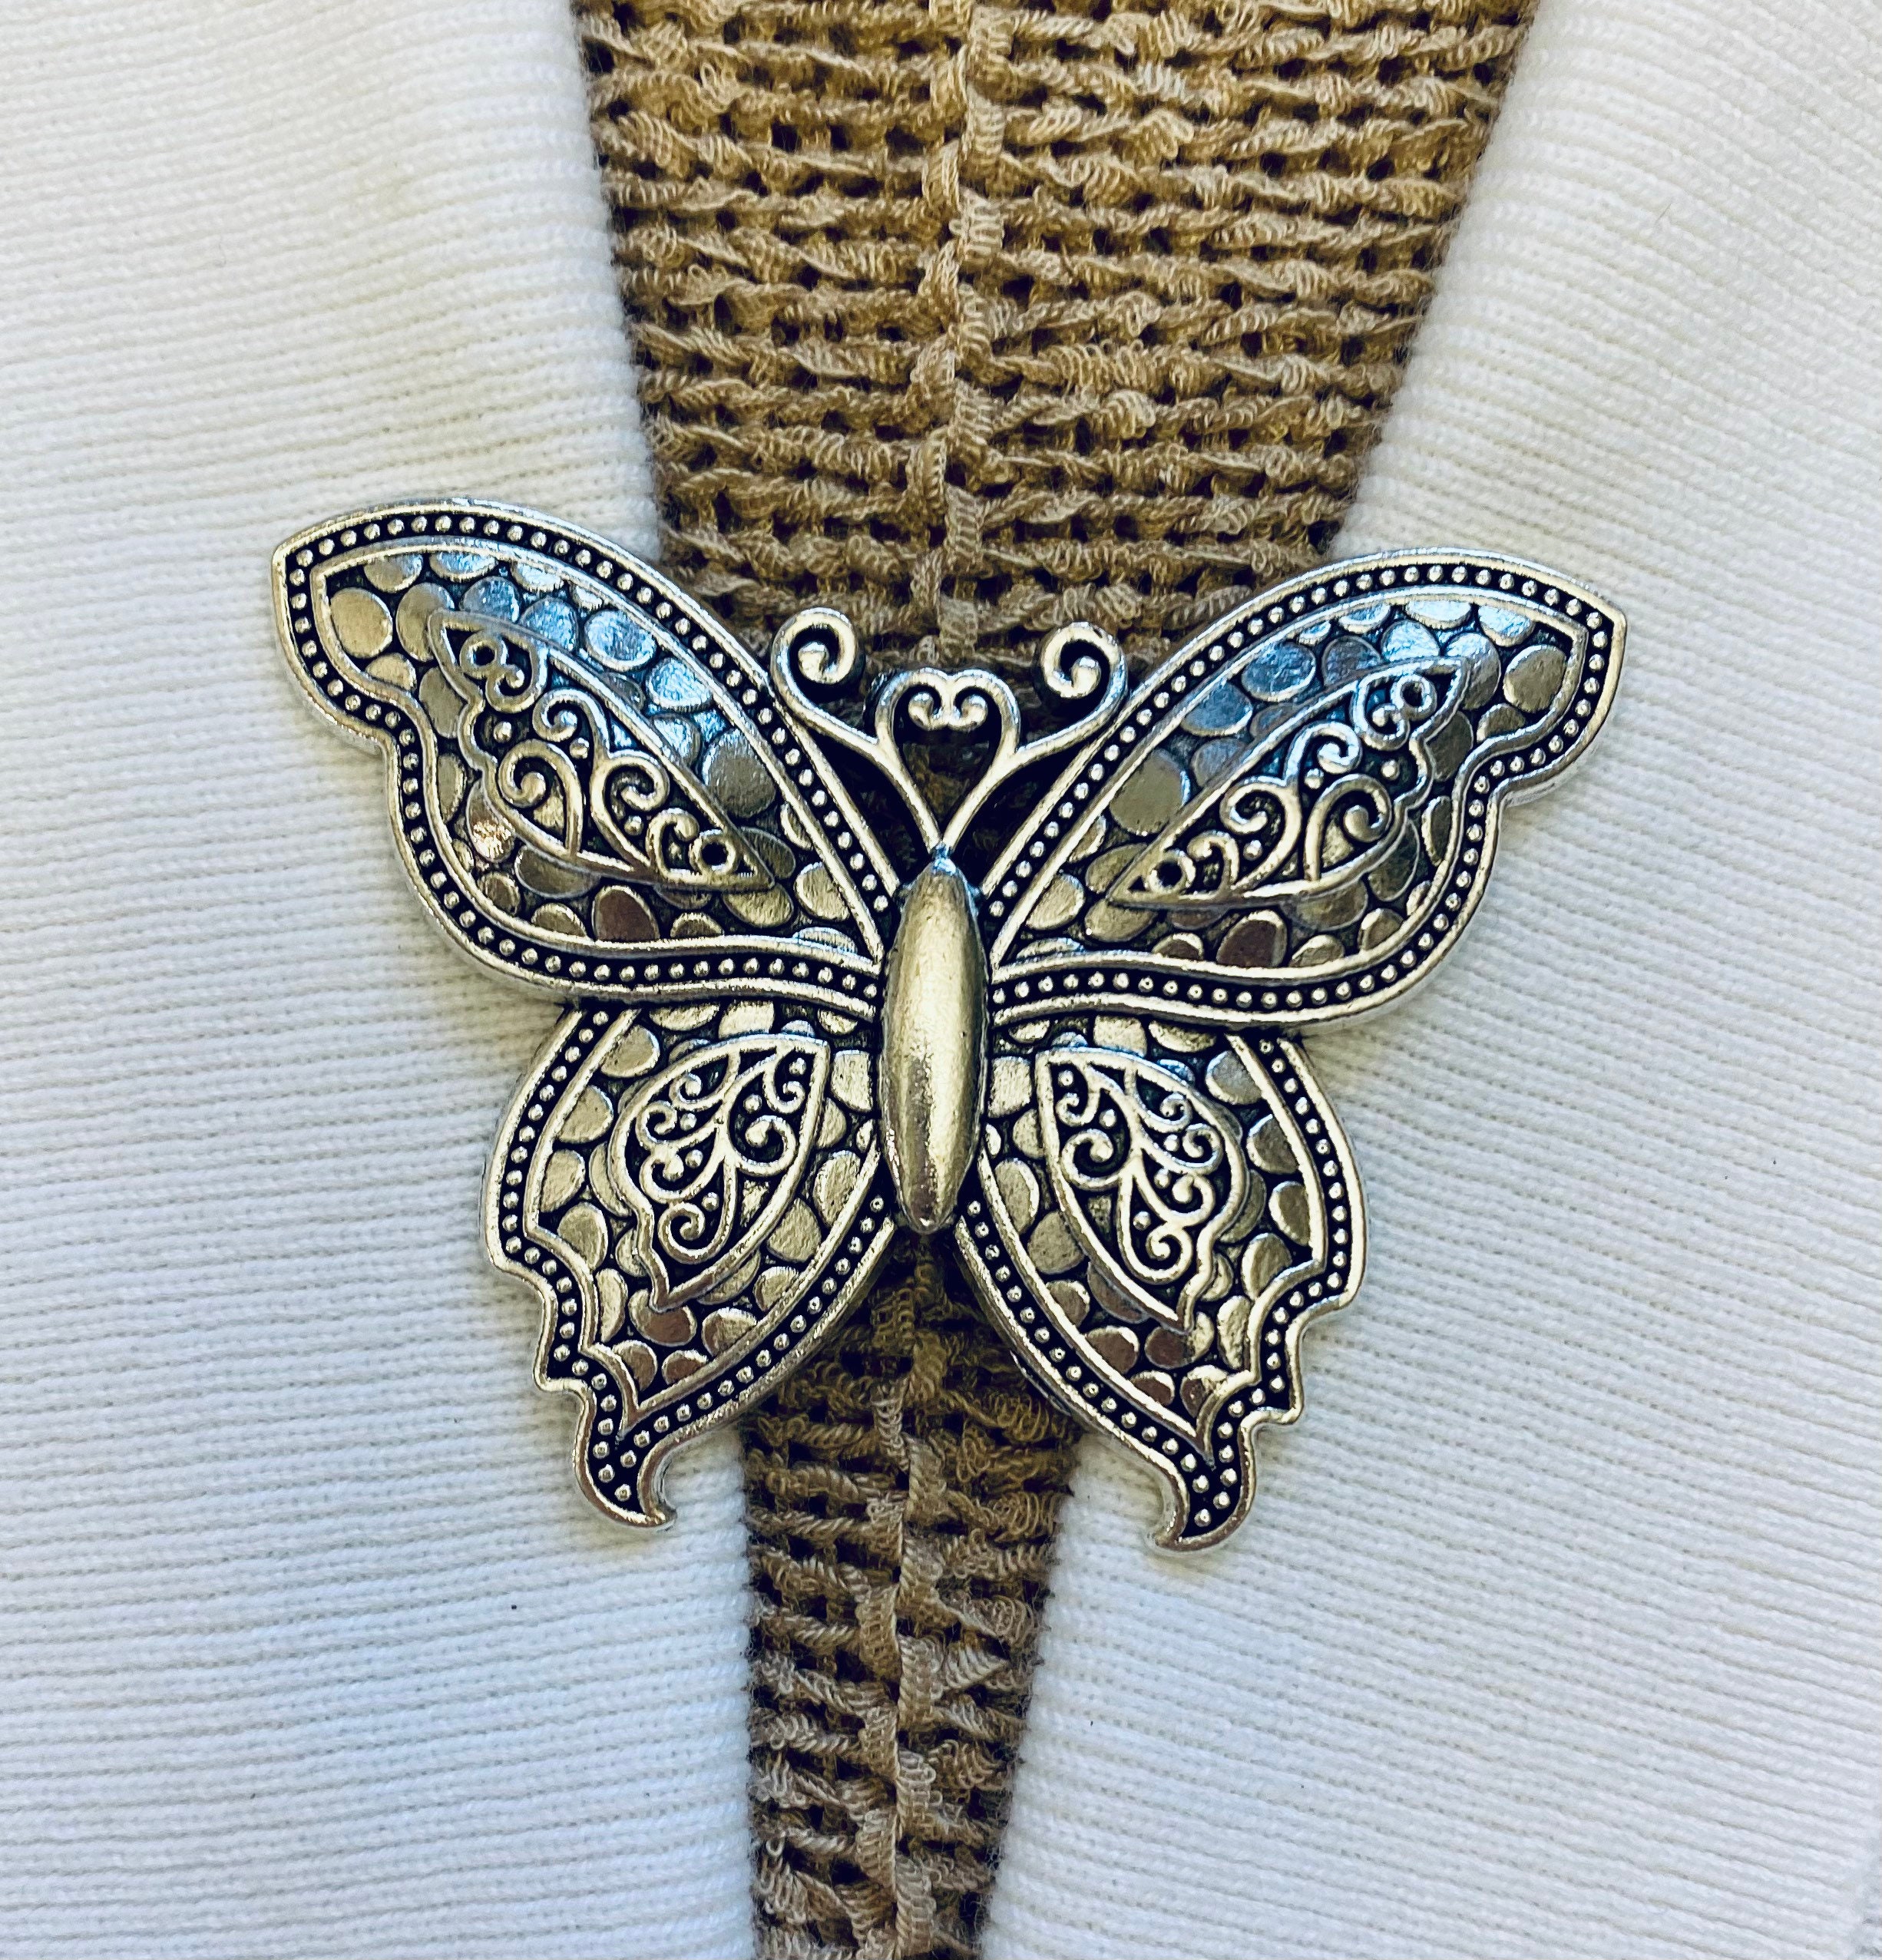 Tib 50 Sätze/Lot Squeeze Badge Holder Butterfly Verschluss Pin